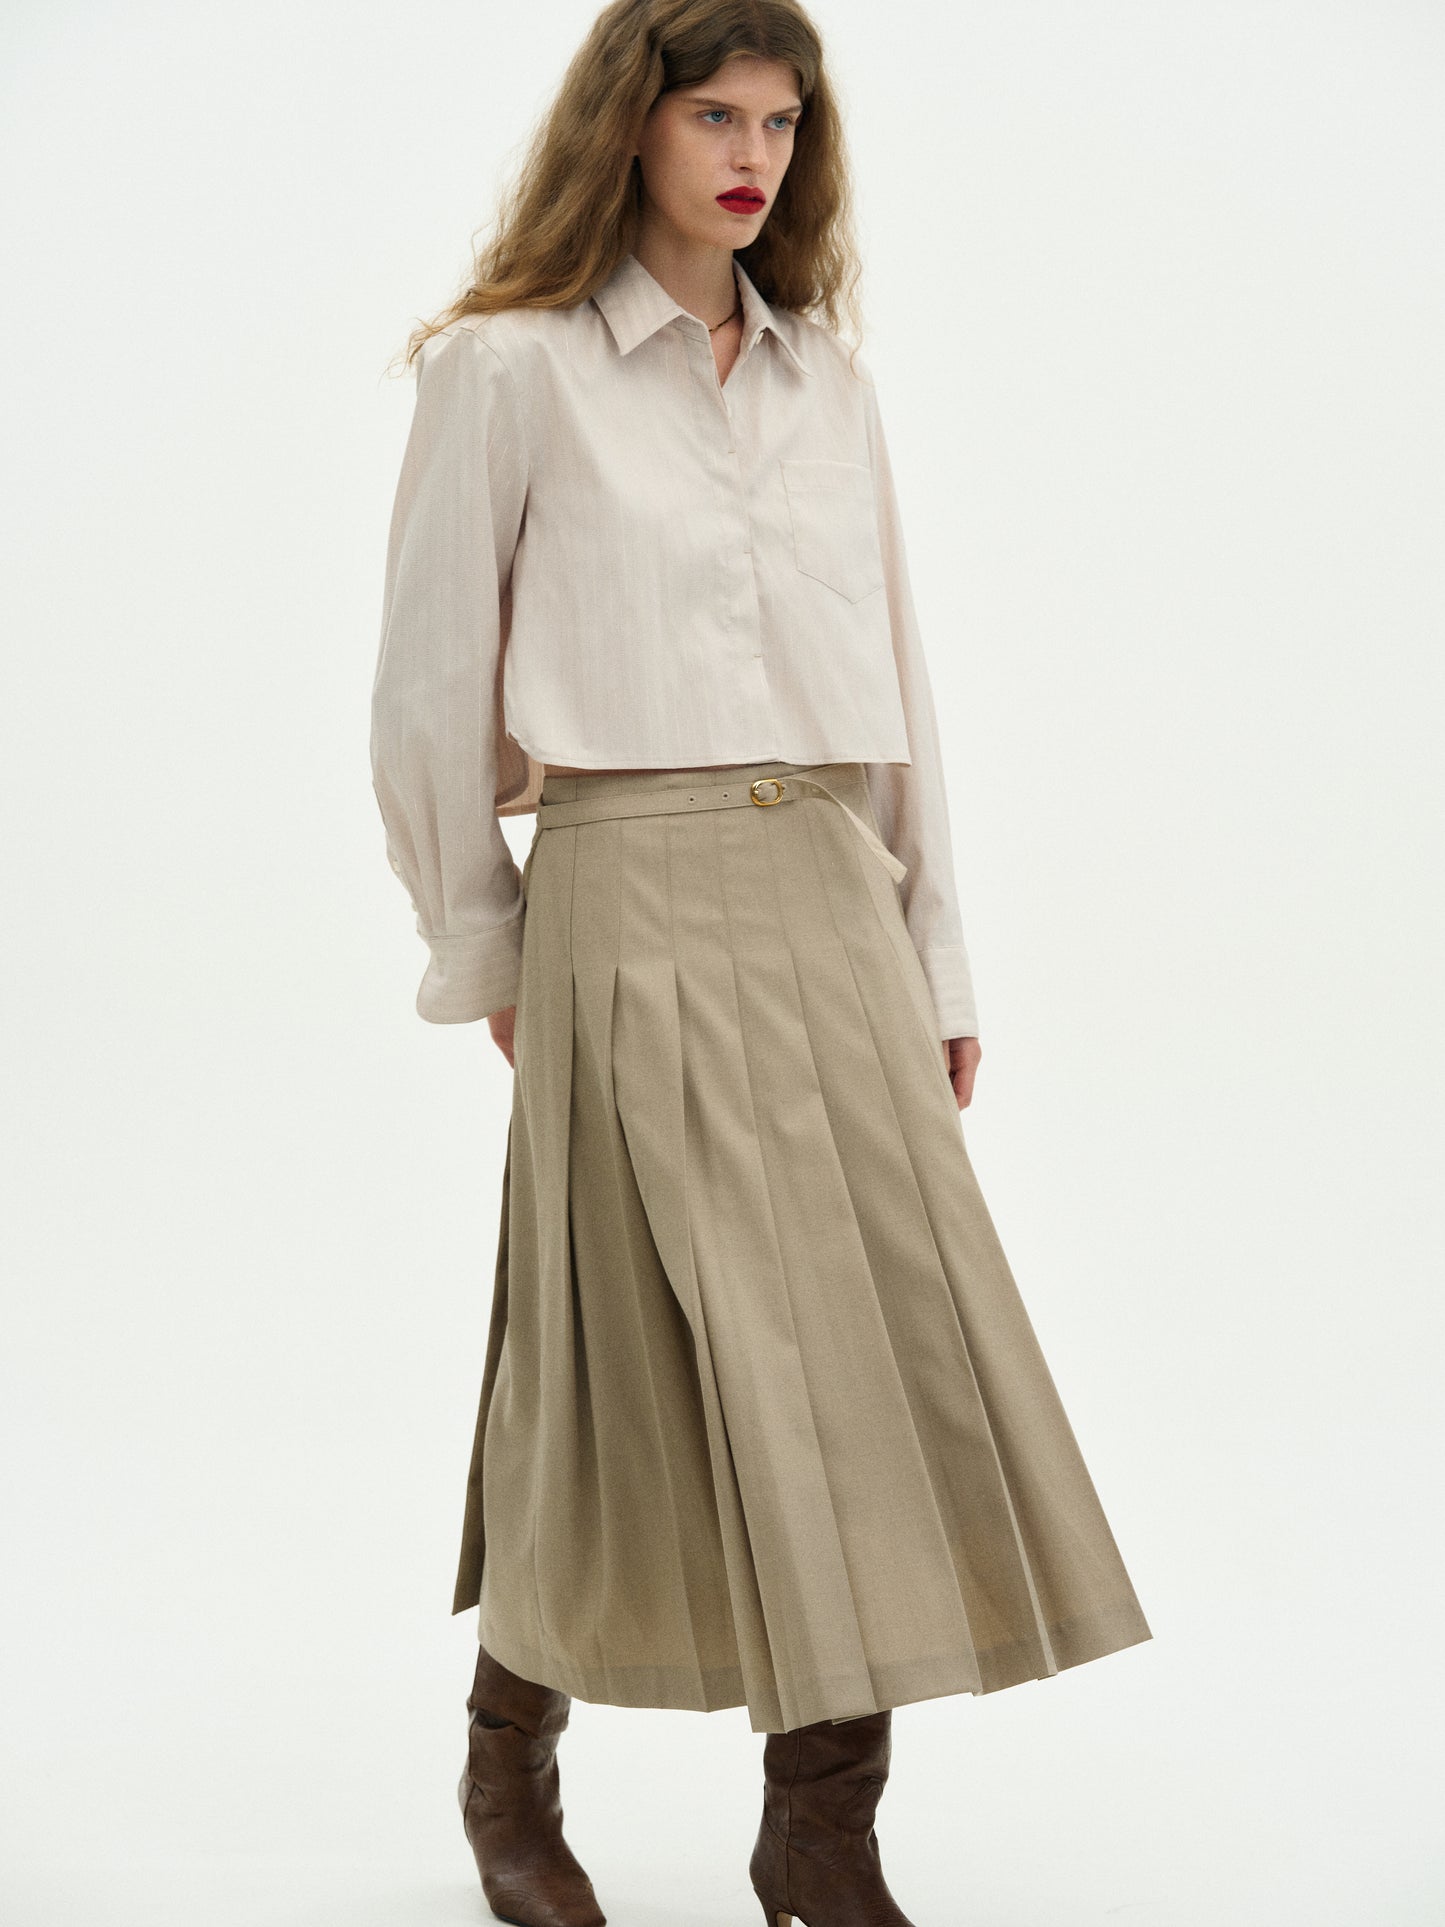 Buckle Pleated Skirt, Sandstone